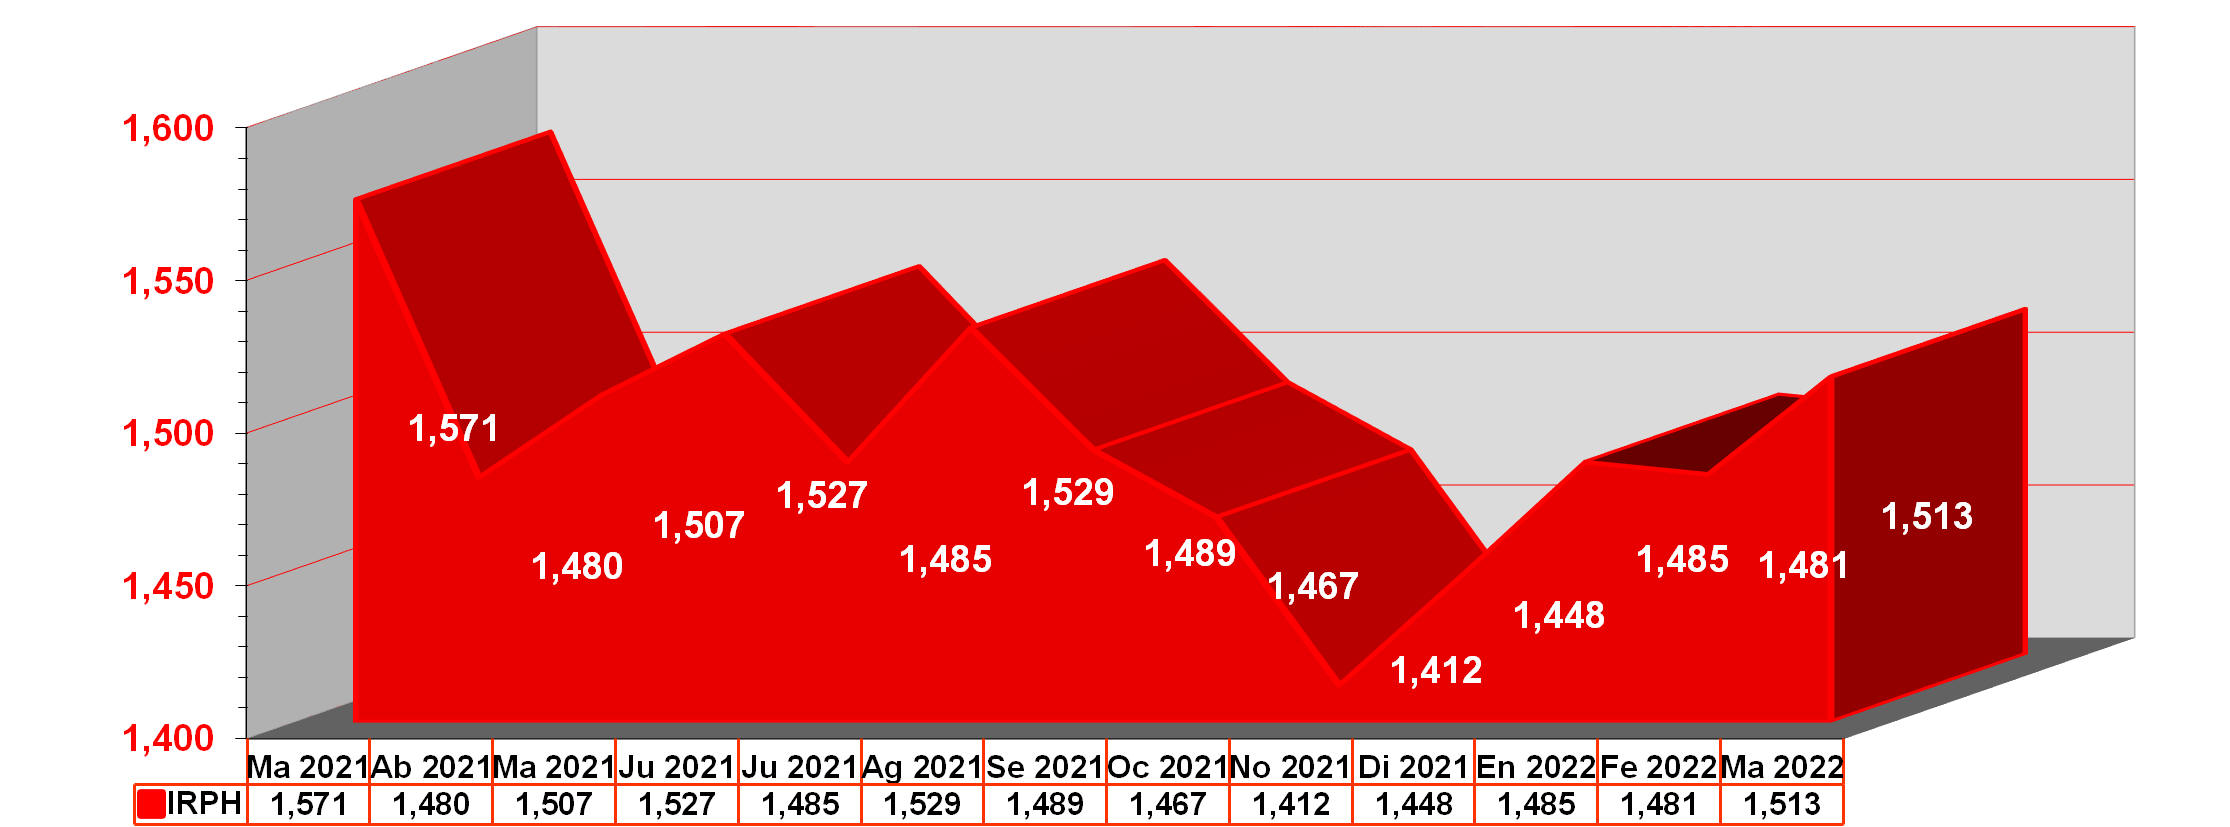 Gráfico anual IRPH desde marzo de 2021 hasta marzo de 2022